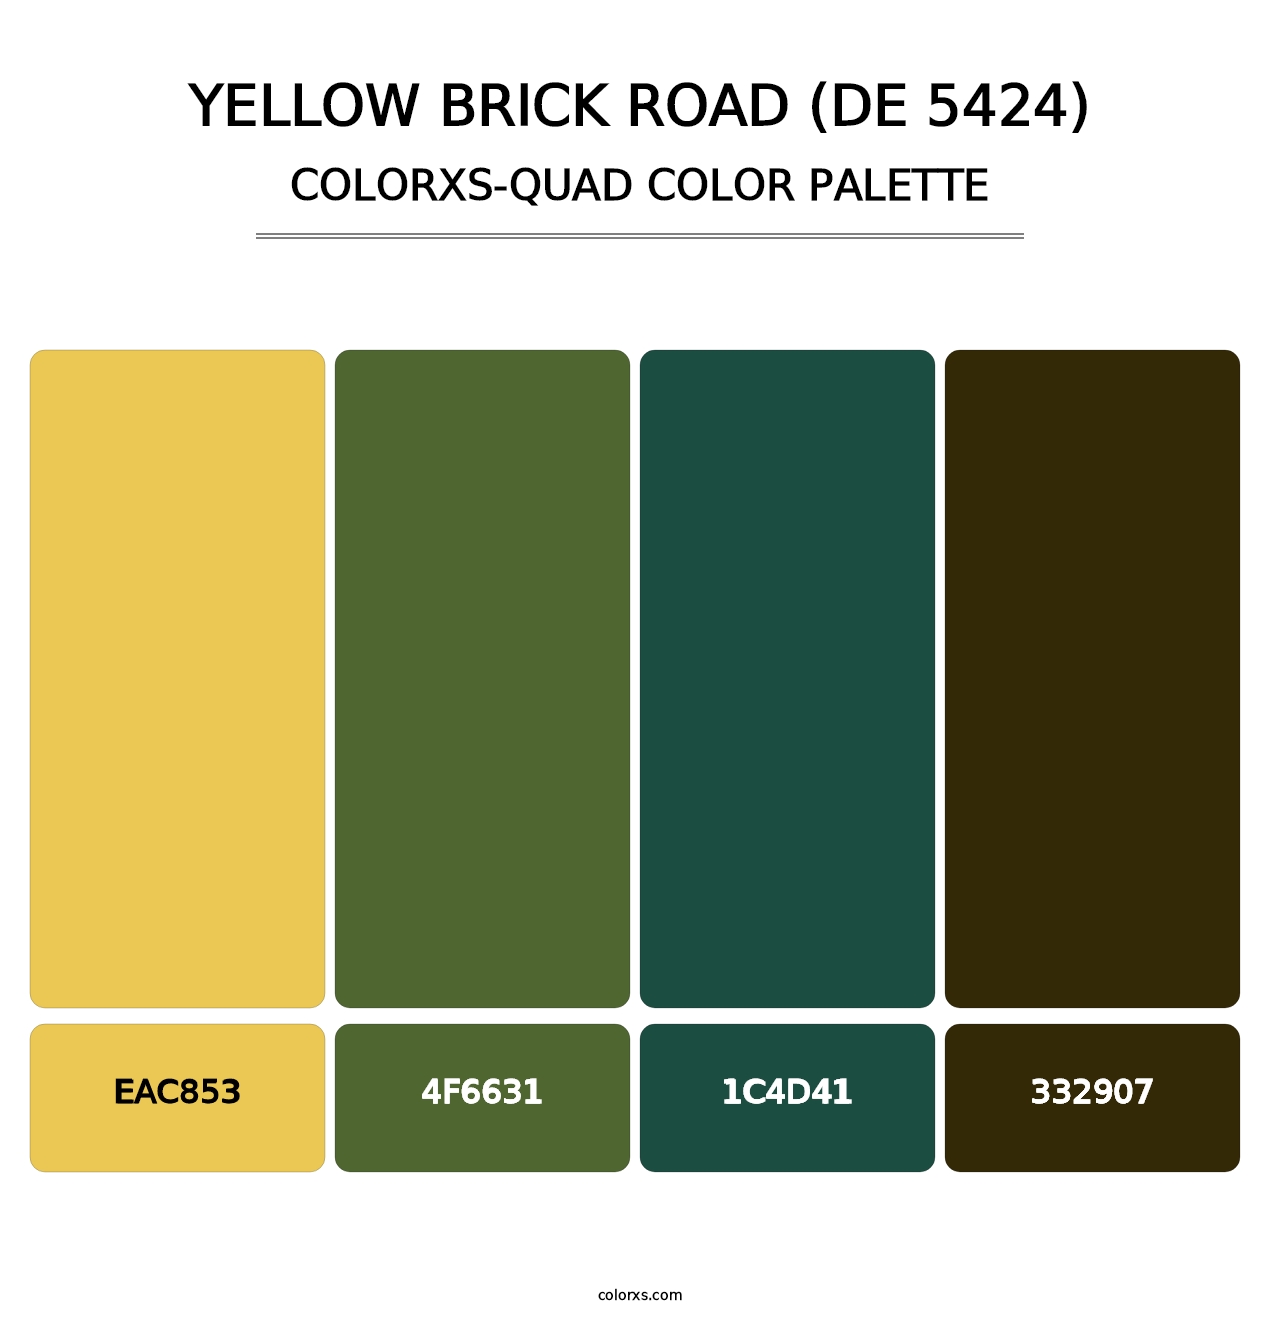 Yellow Brick Road (DE 5424) - Colorxs Quad Palette